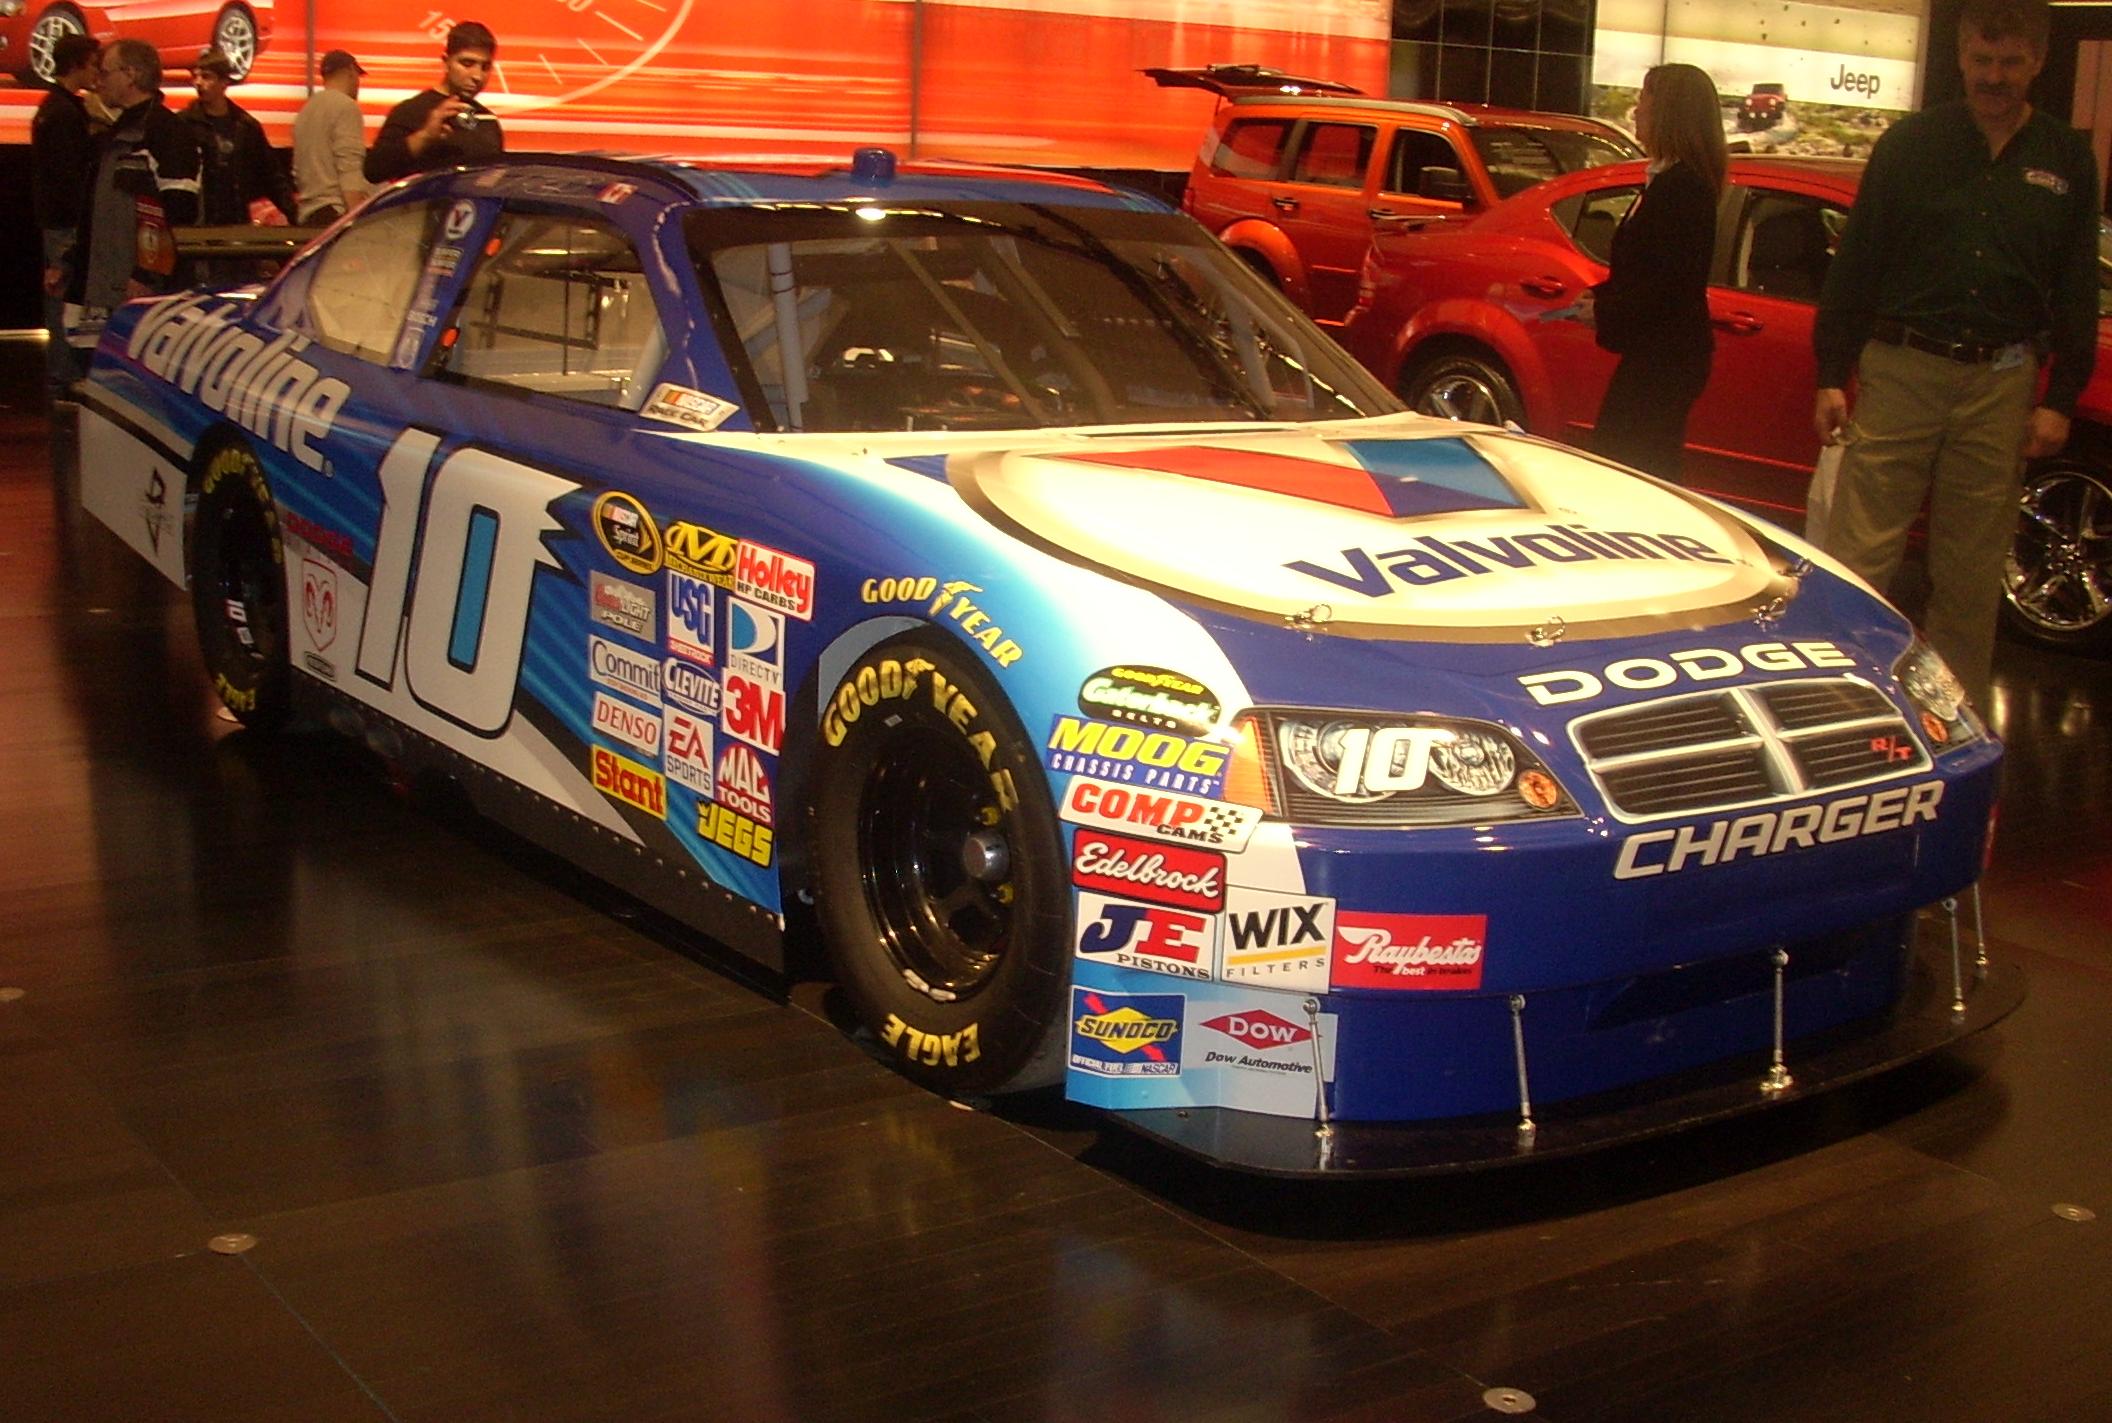 File:Dodge Charger NASCAR (Montreal).jpg